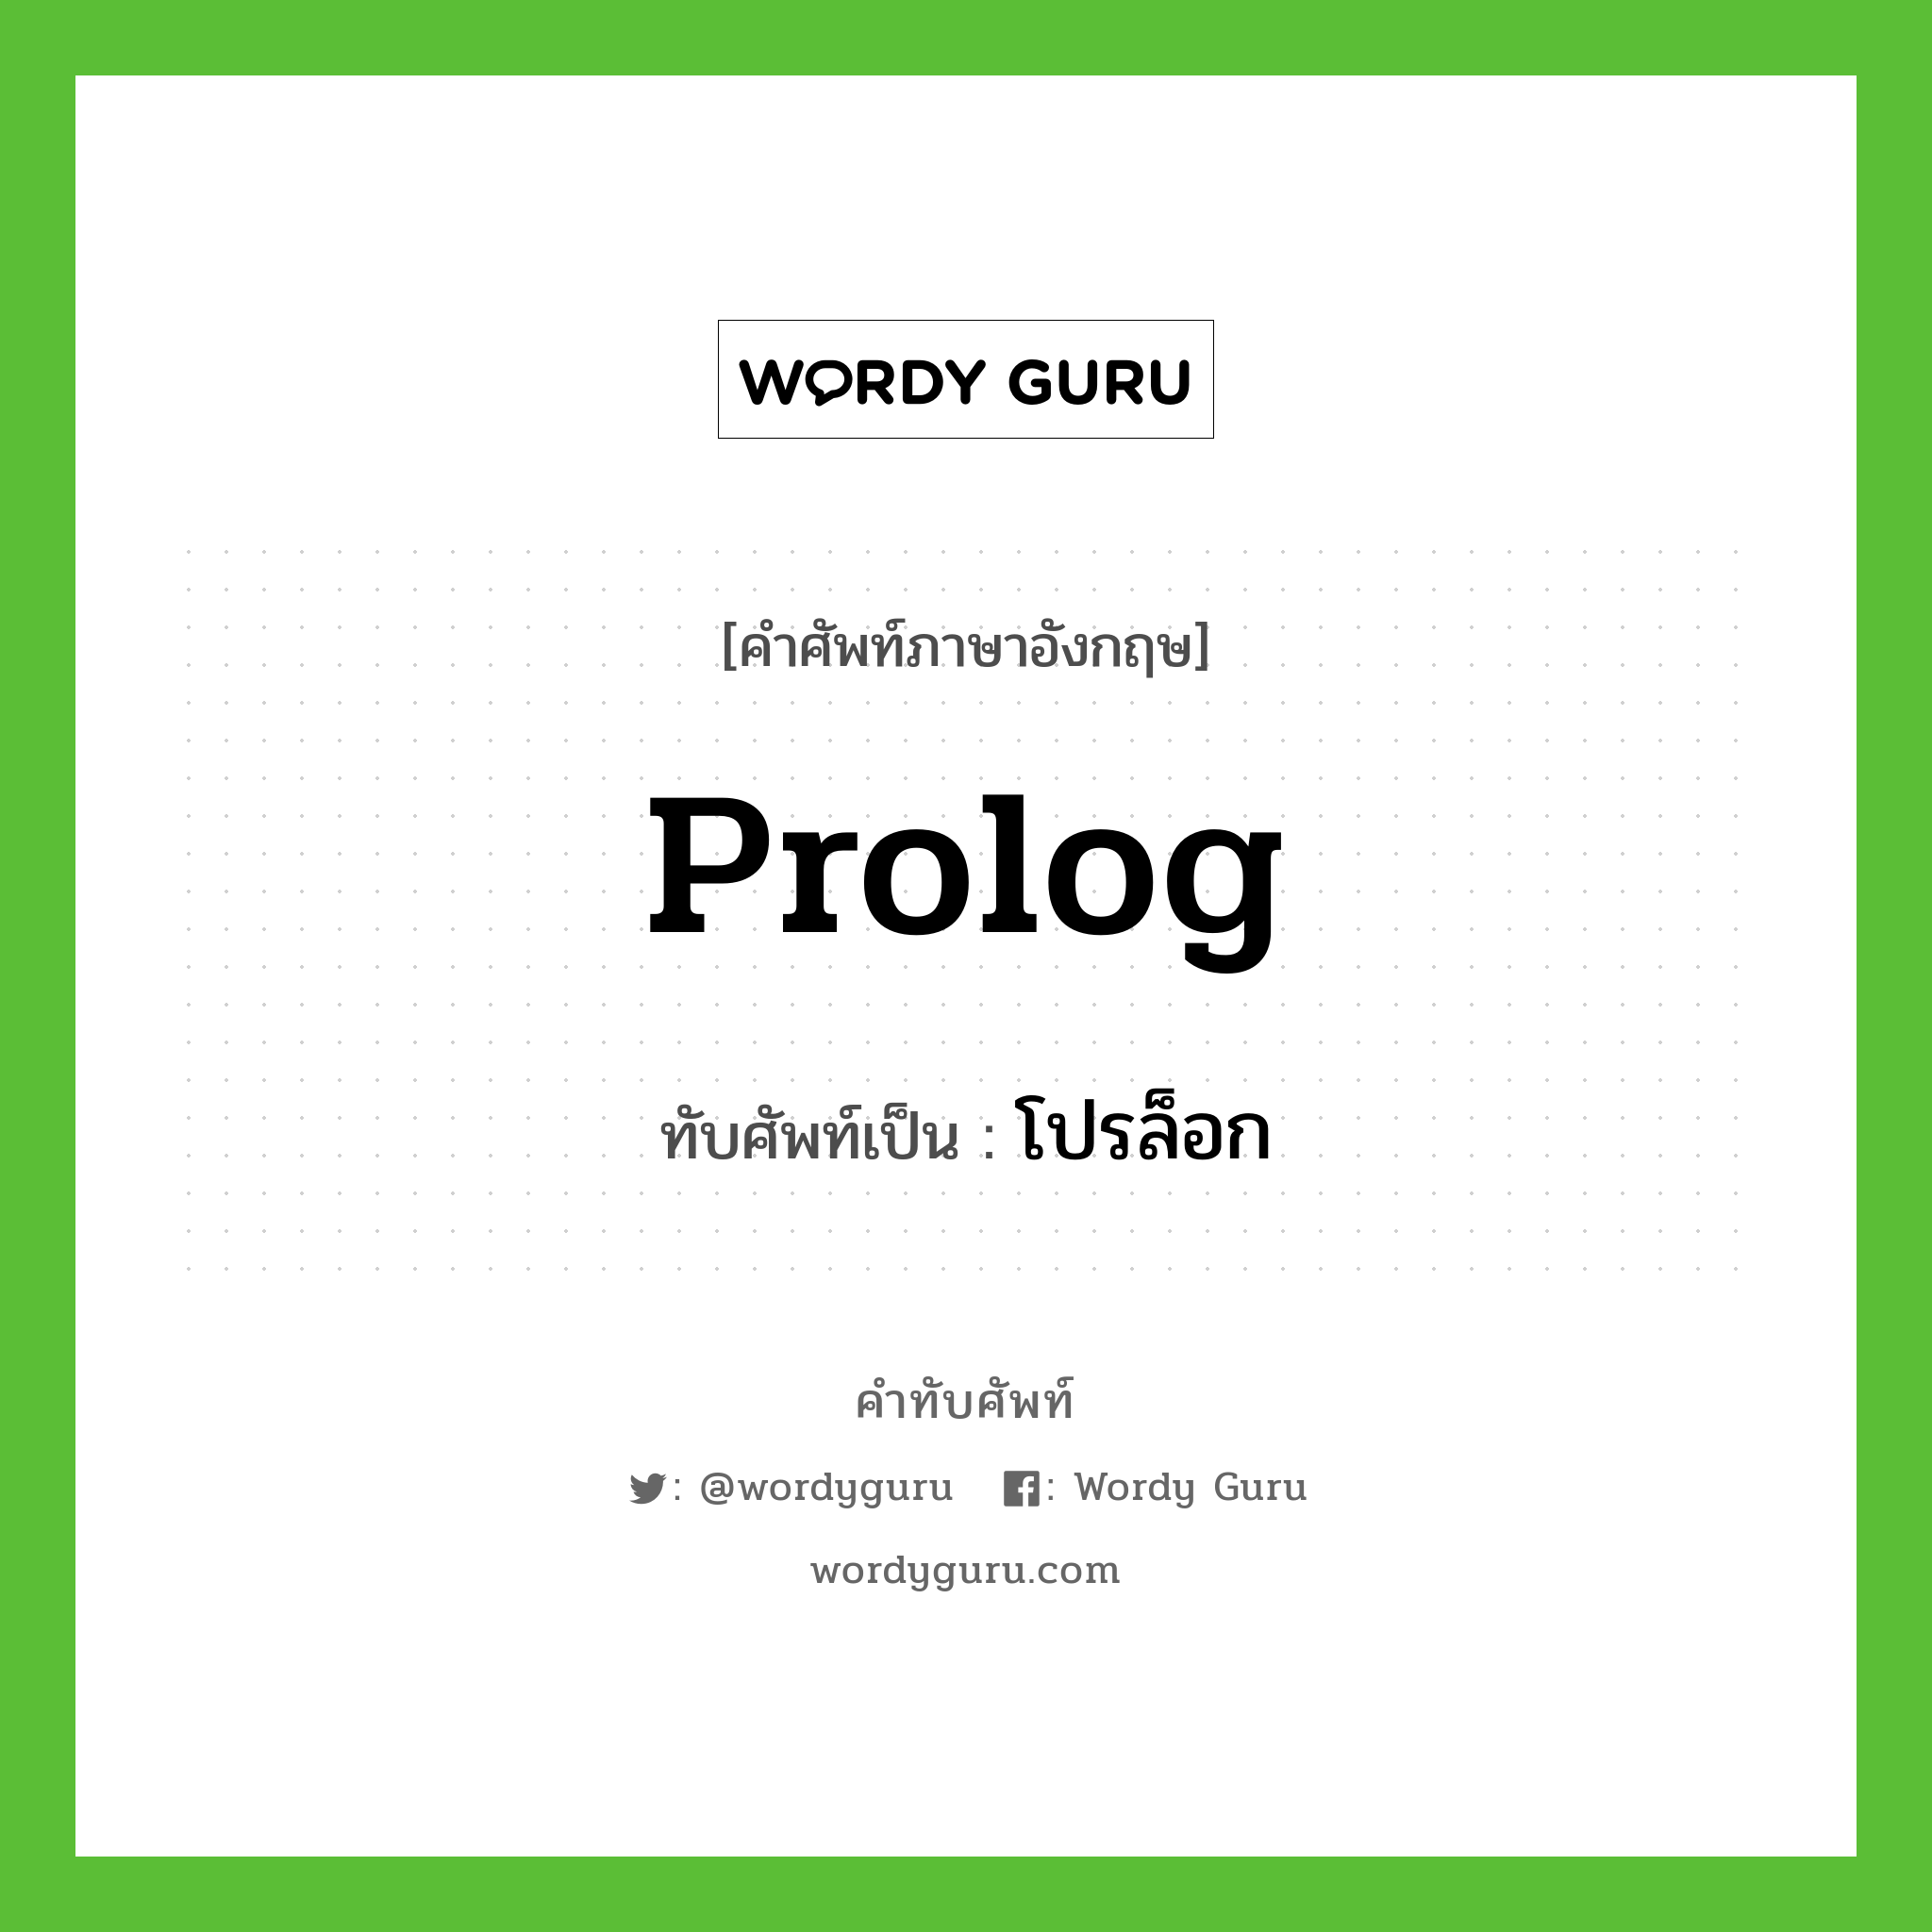 prolog เขียนเป็นคำไทยว่าอะไร?, คำศัพท์ภาษาอังกฤษ prolog ทับศัพท์เป็น โปรล็อก